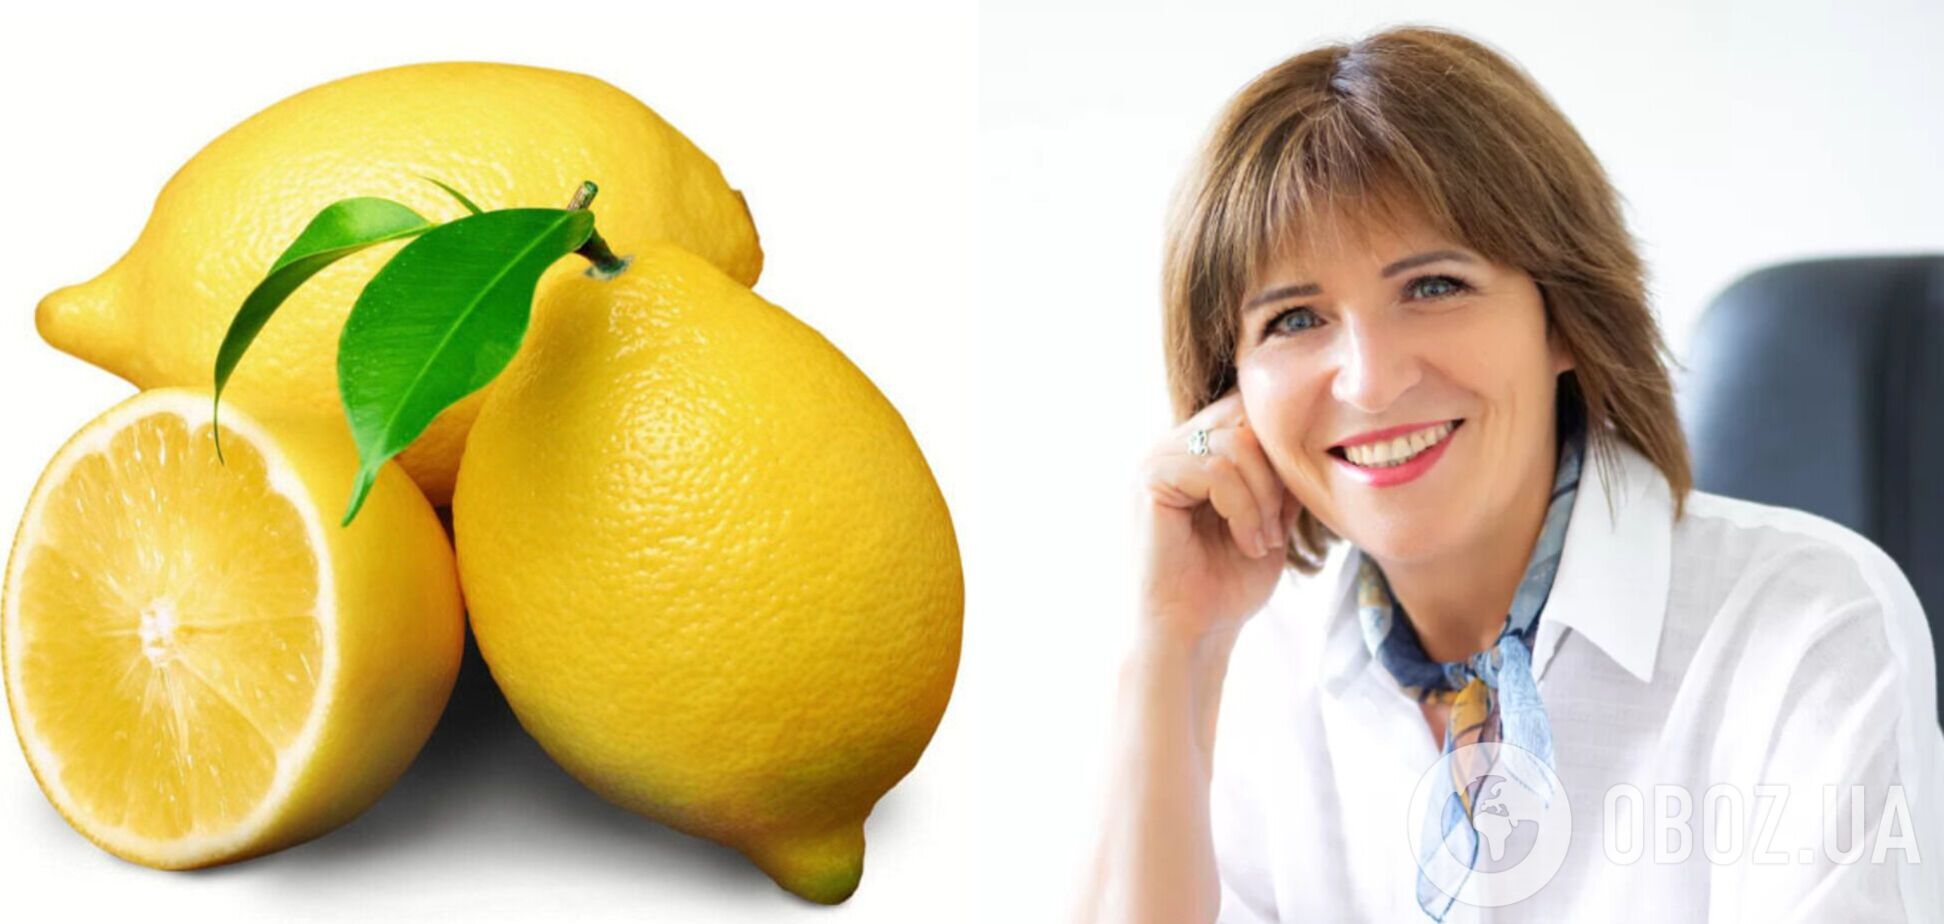 Сколько лимона можно есть в день и насколько он полезный: Светлана Фус развеивает мифы